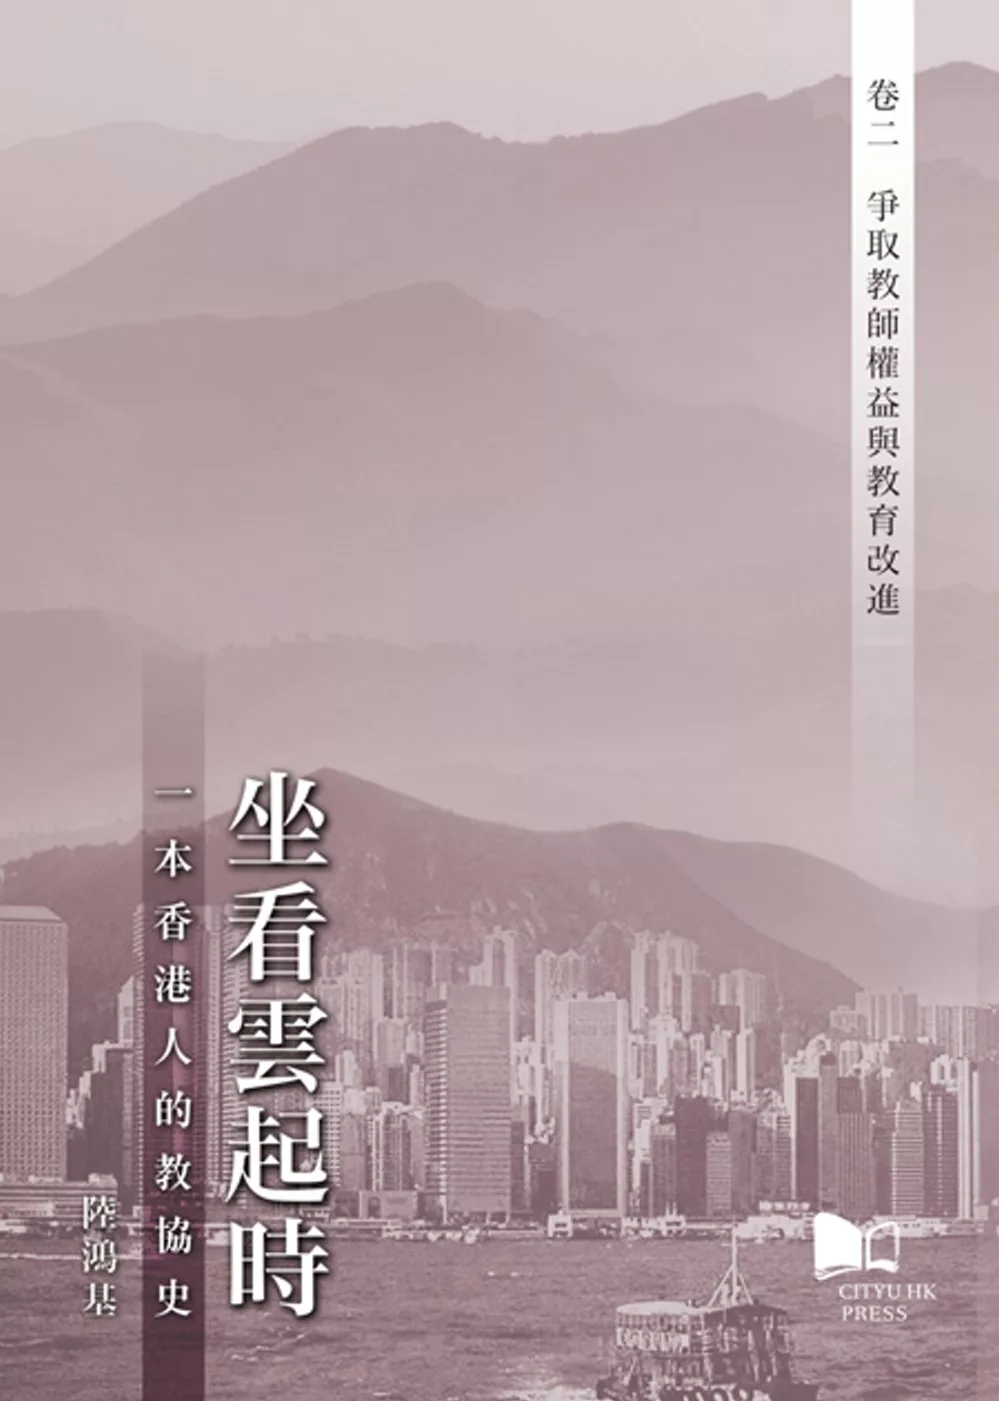 坐看雲起時:一本香港人的教協史 卷二：爭取教師權益與教育改進